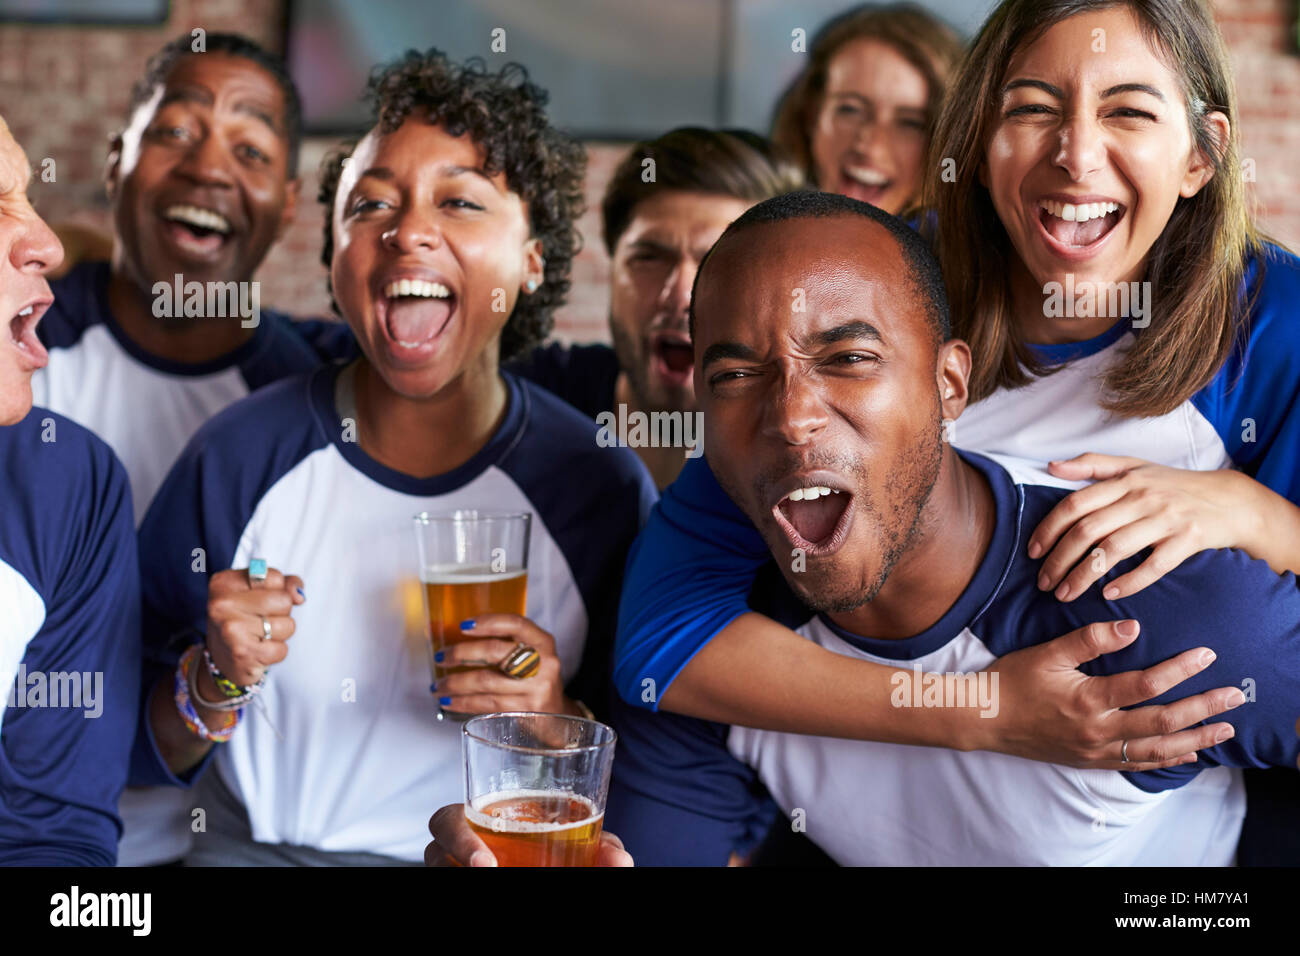 Porträt von Freunden Spiel Sports Bar auf Bildschirmen beobachten Stockfoto